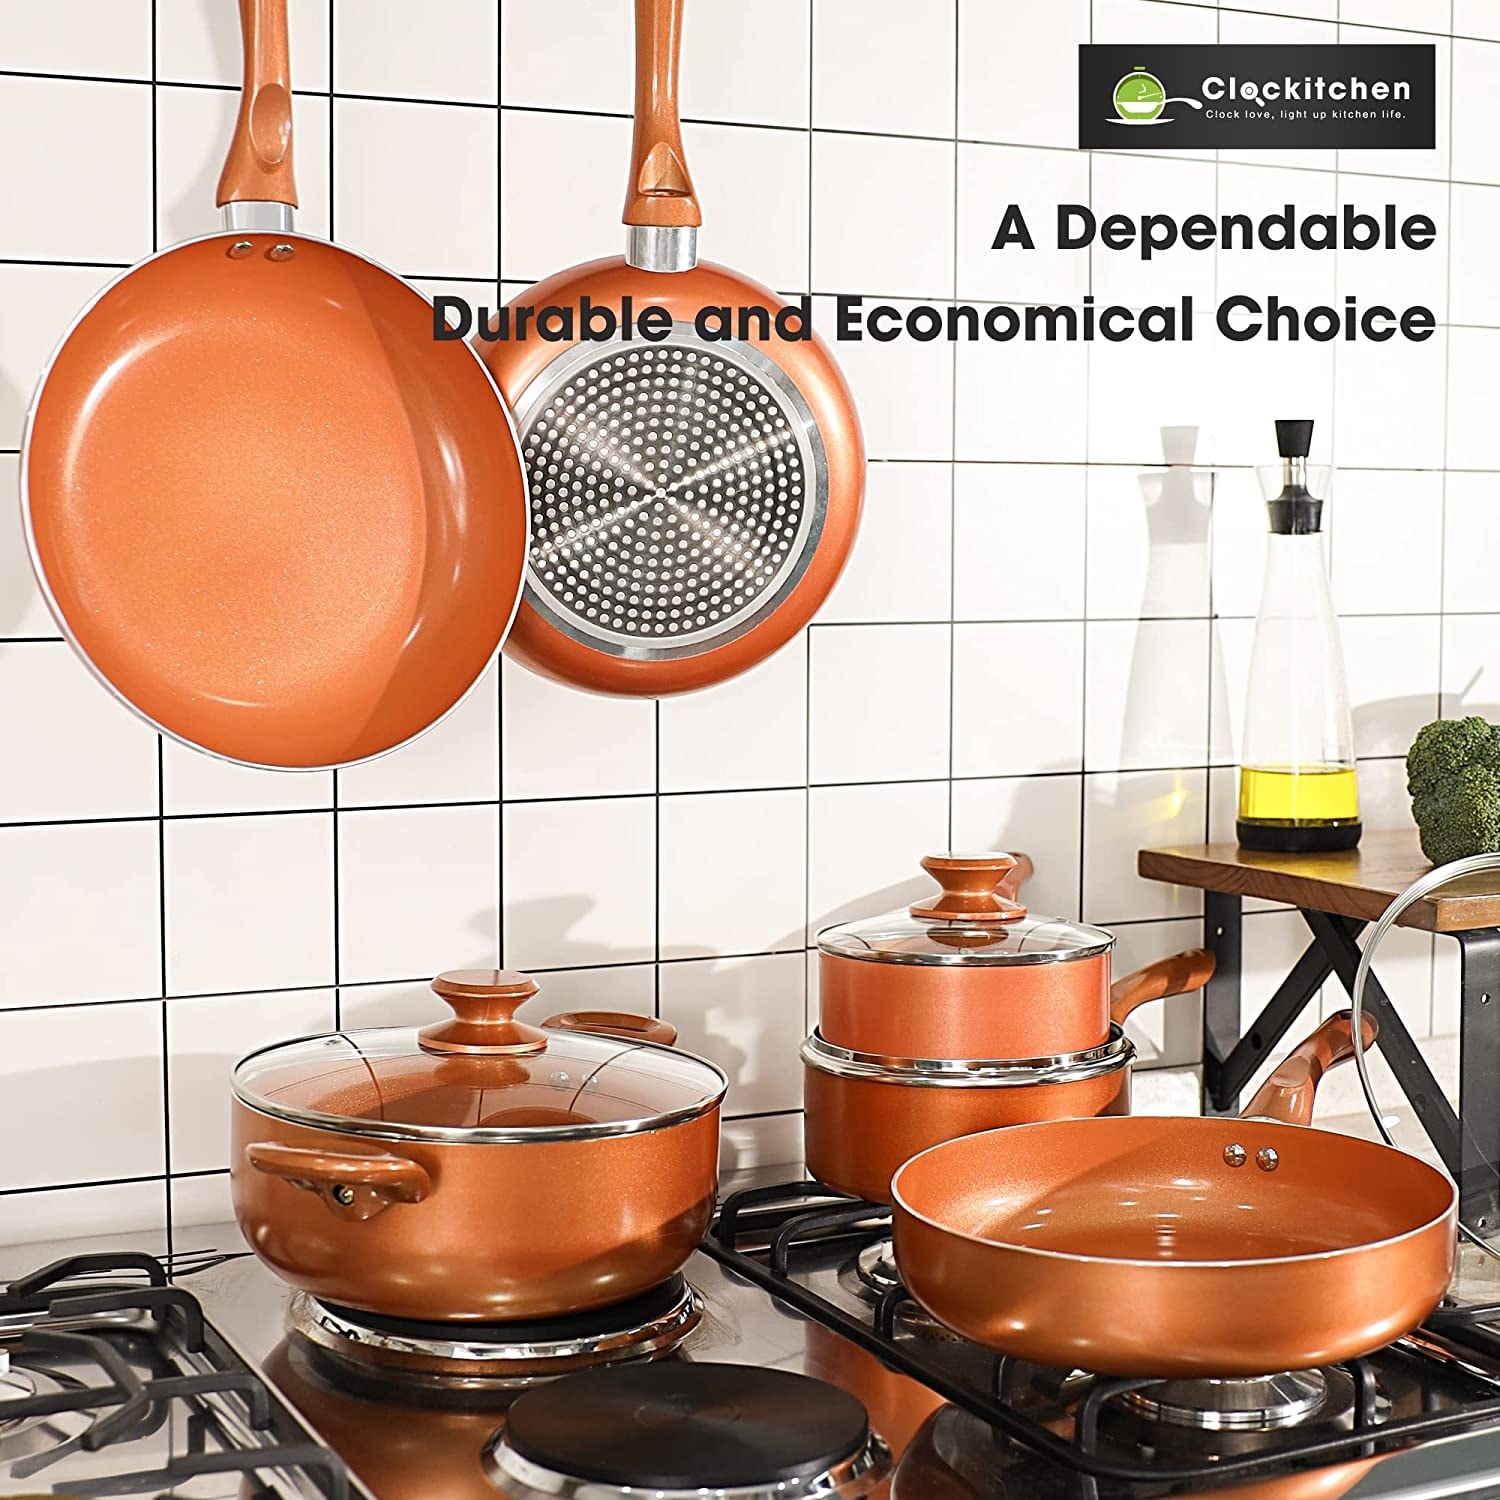 Circulon 11 Piece Momentum Stainless Steel Nonstick Pots and Pans/Cookware  Set - AliExpress